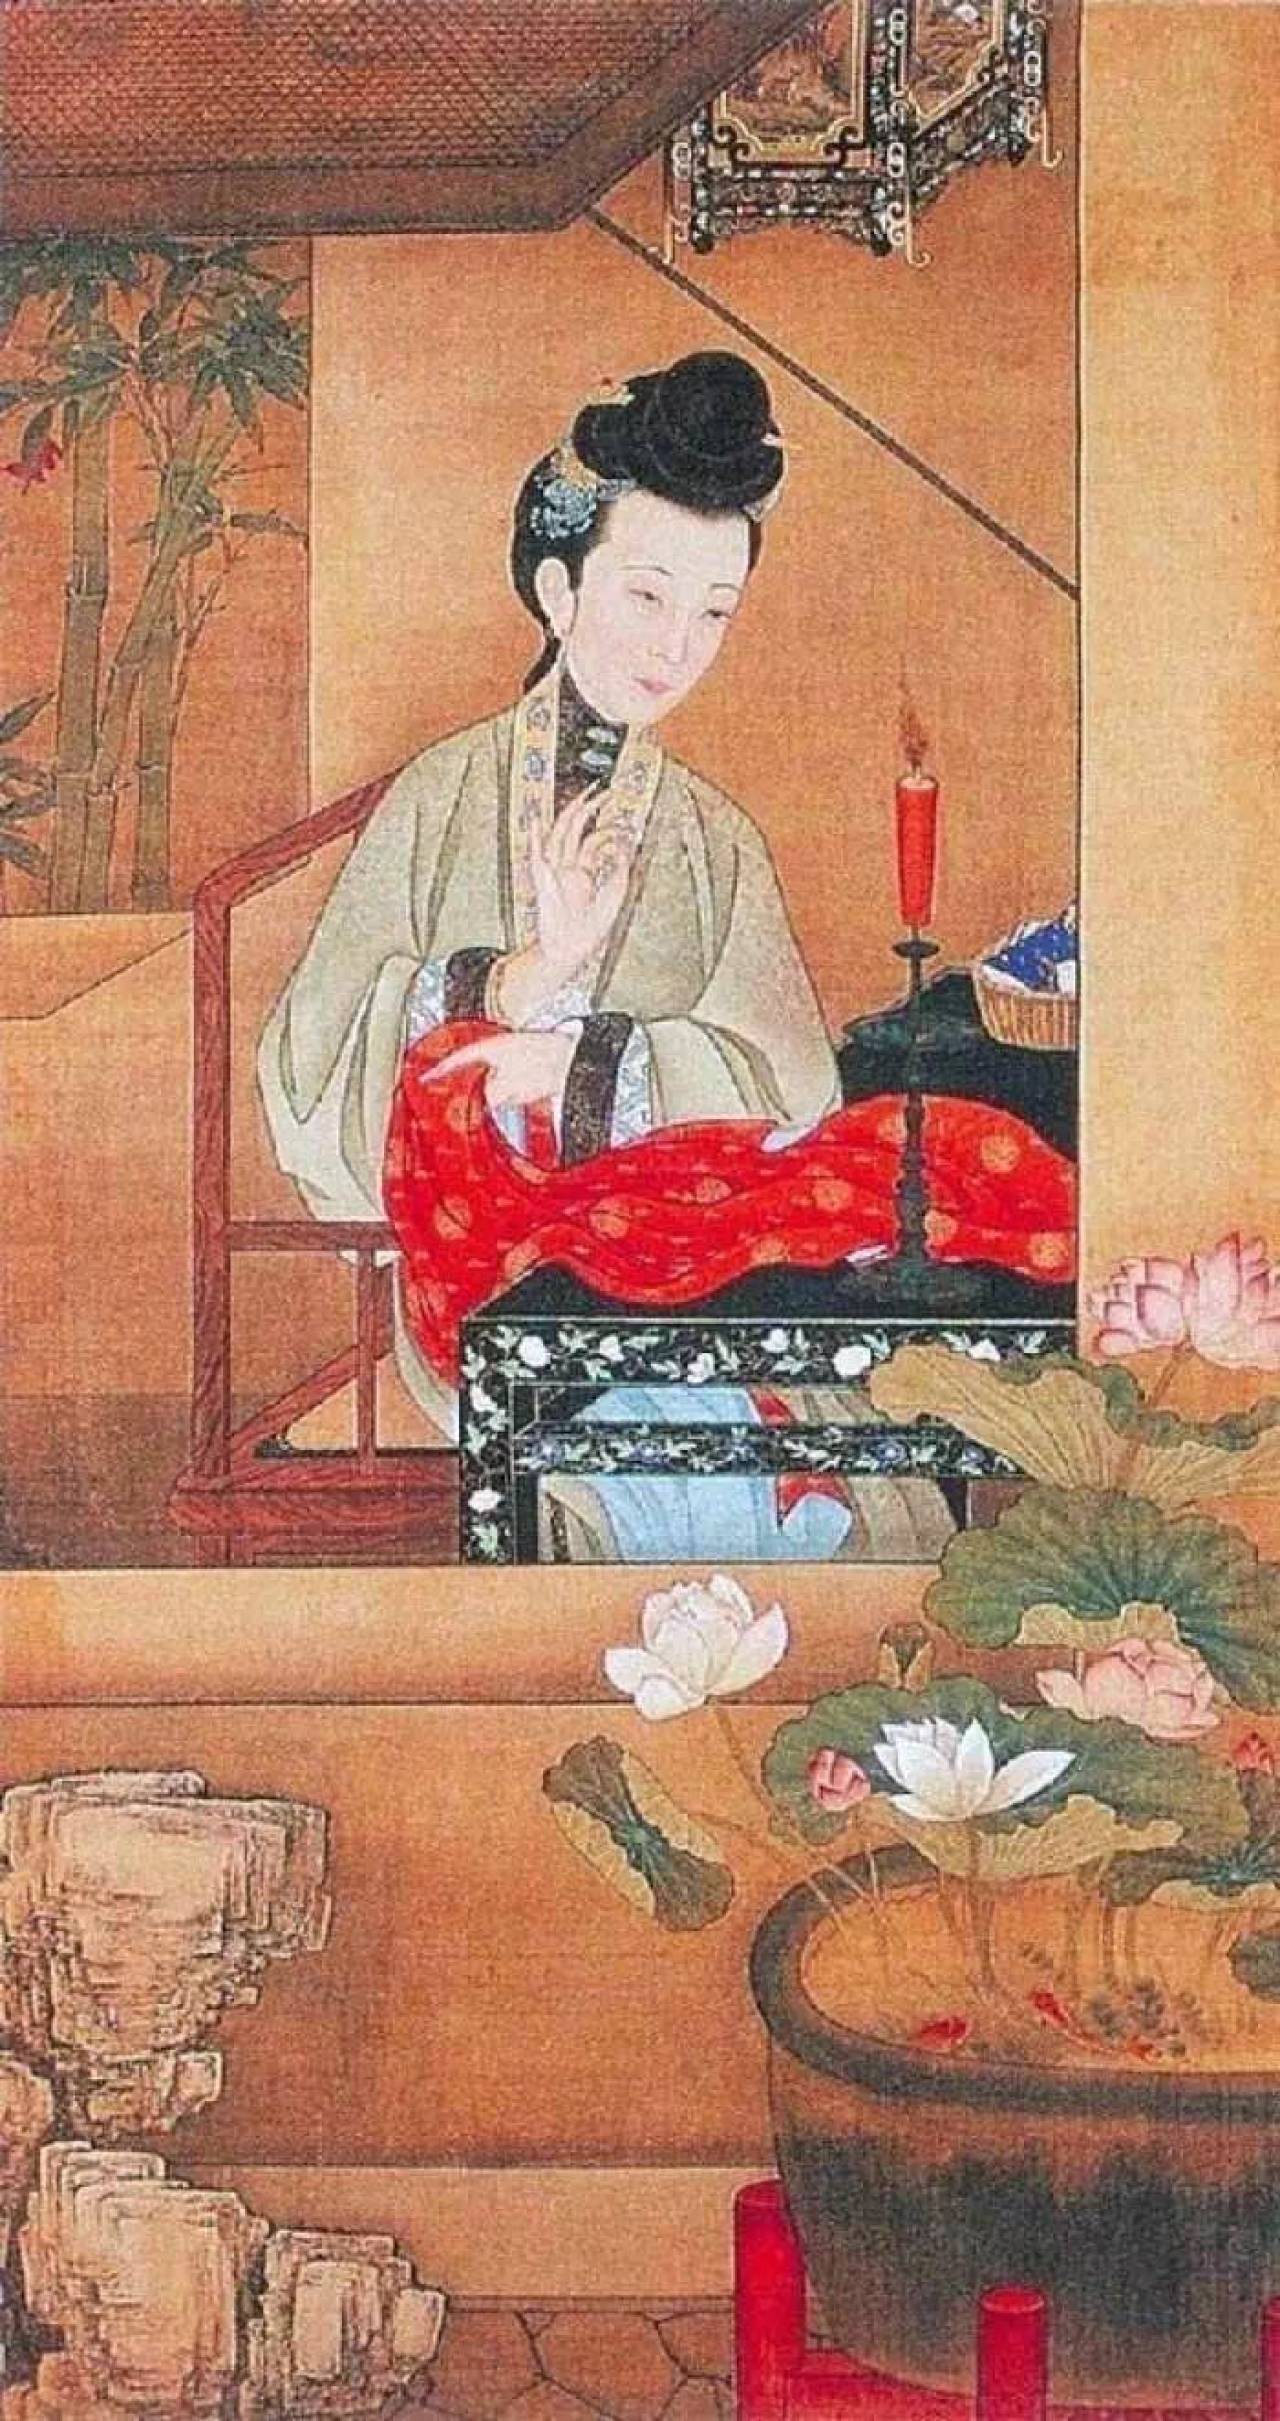 二千年来，妃嫔侍寝花样百出，清朝皇帝有节制